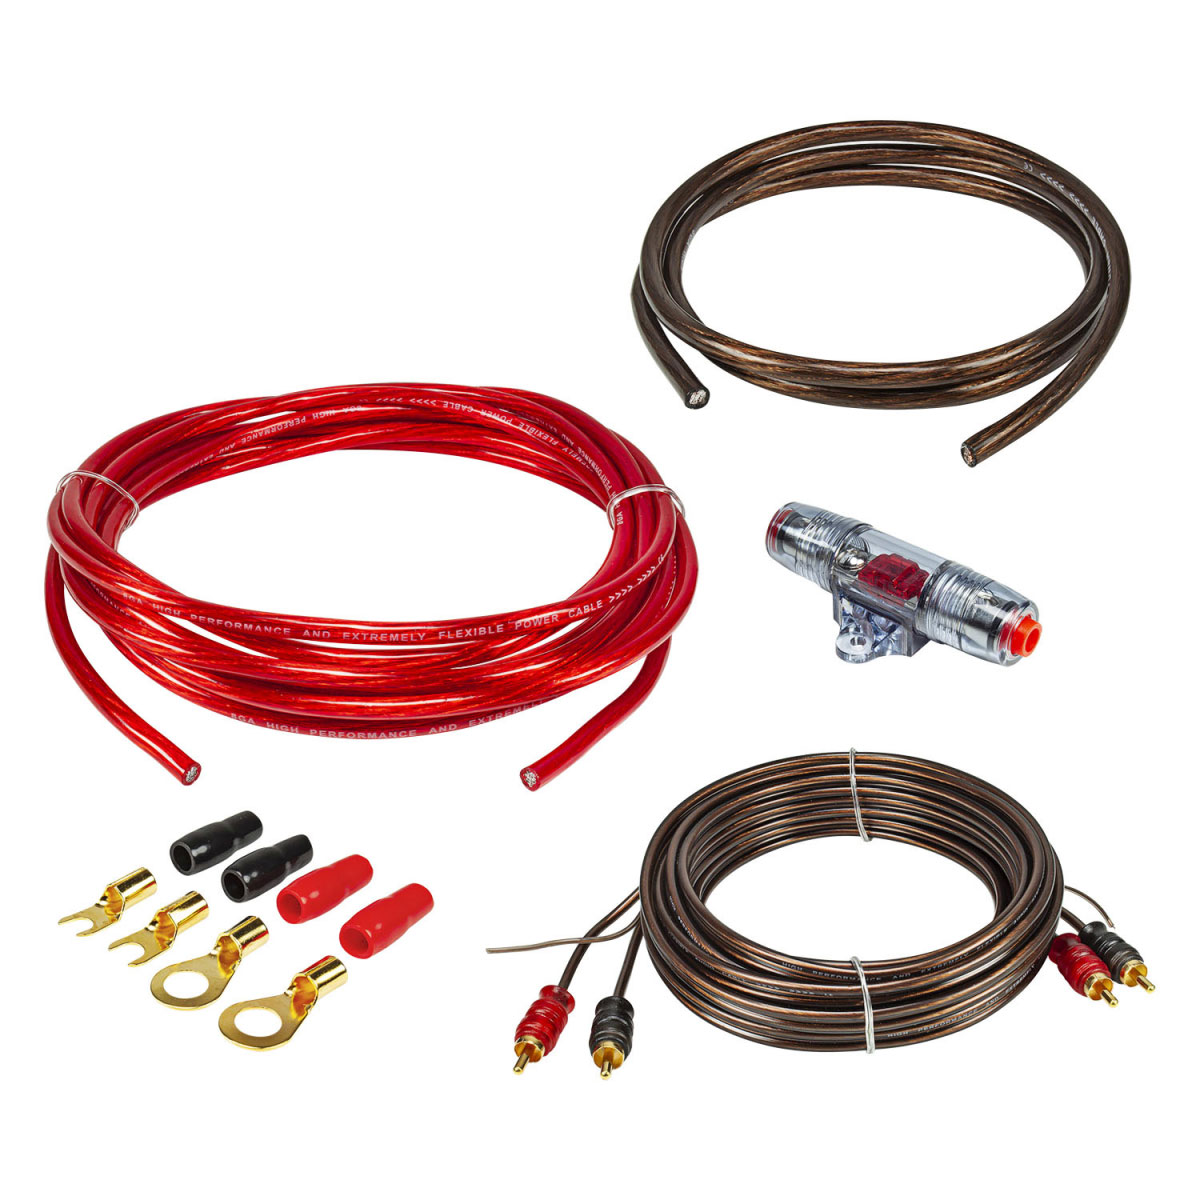 Kabel Kit Endstufe Strom 5m 10mm² / 5m Cinch / 40A AGU - Endstufenkits  Kabelset - Gold-Installationsprogramm - Sortiment